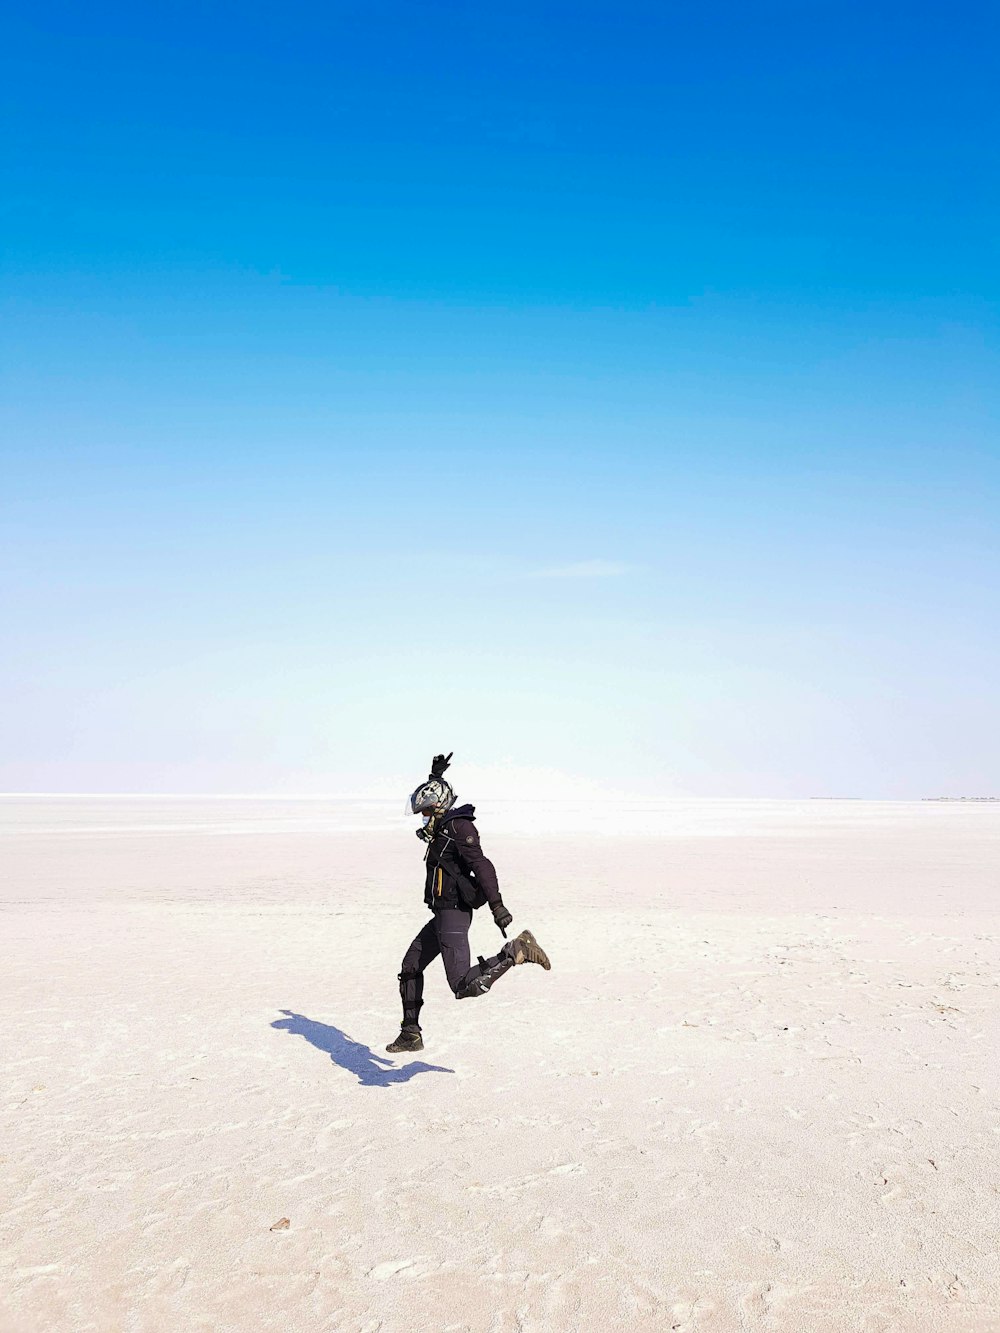 Un hombre corriendo a través de una llanura arenosa bajo un cielo azul